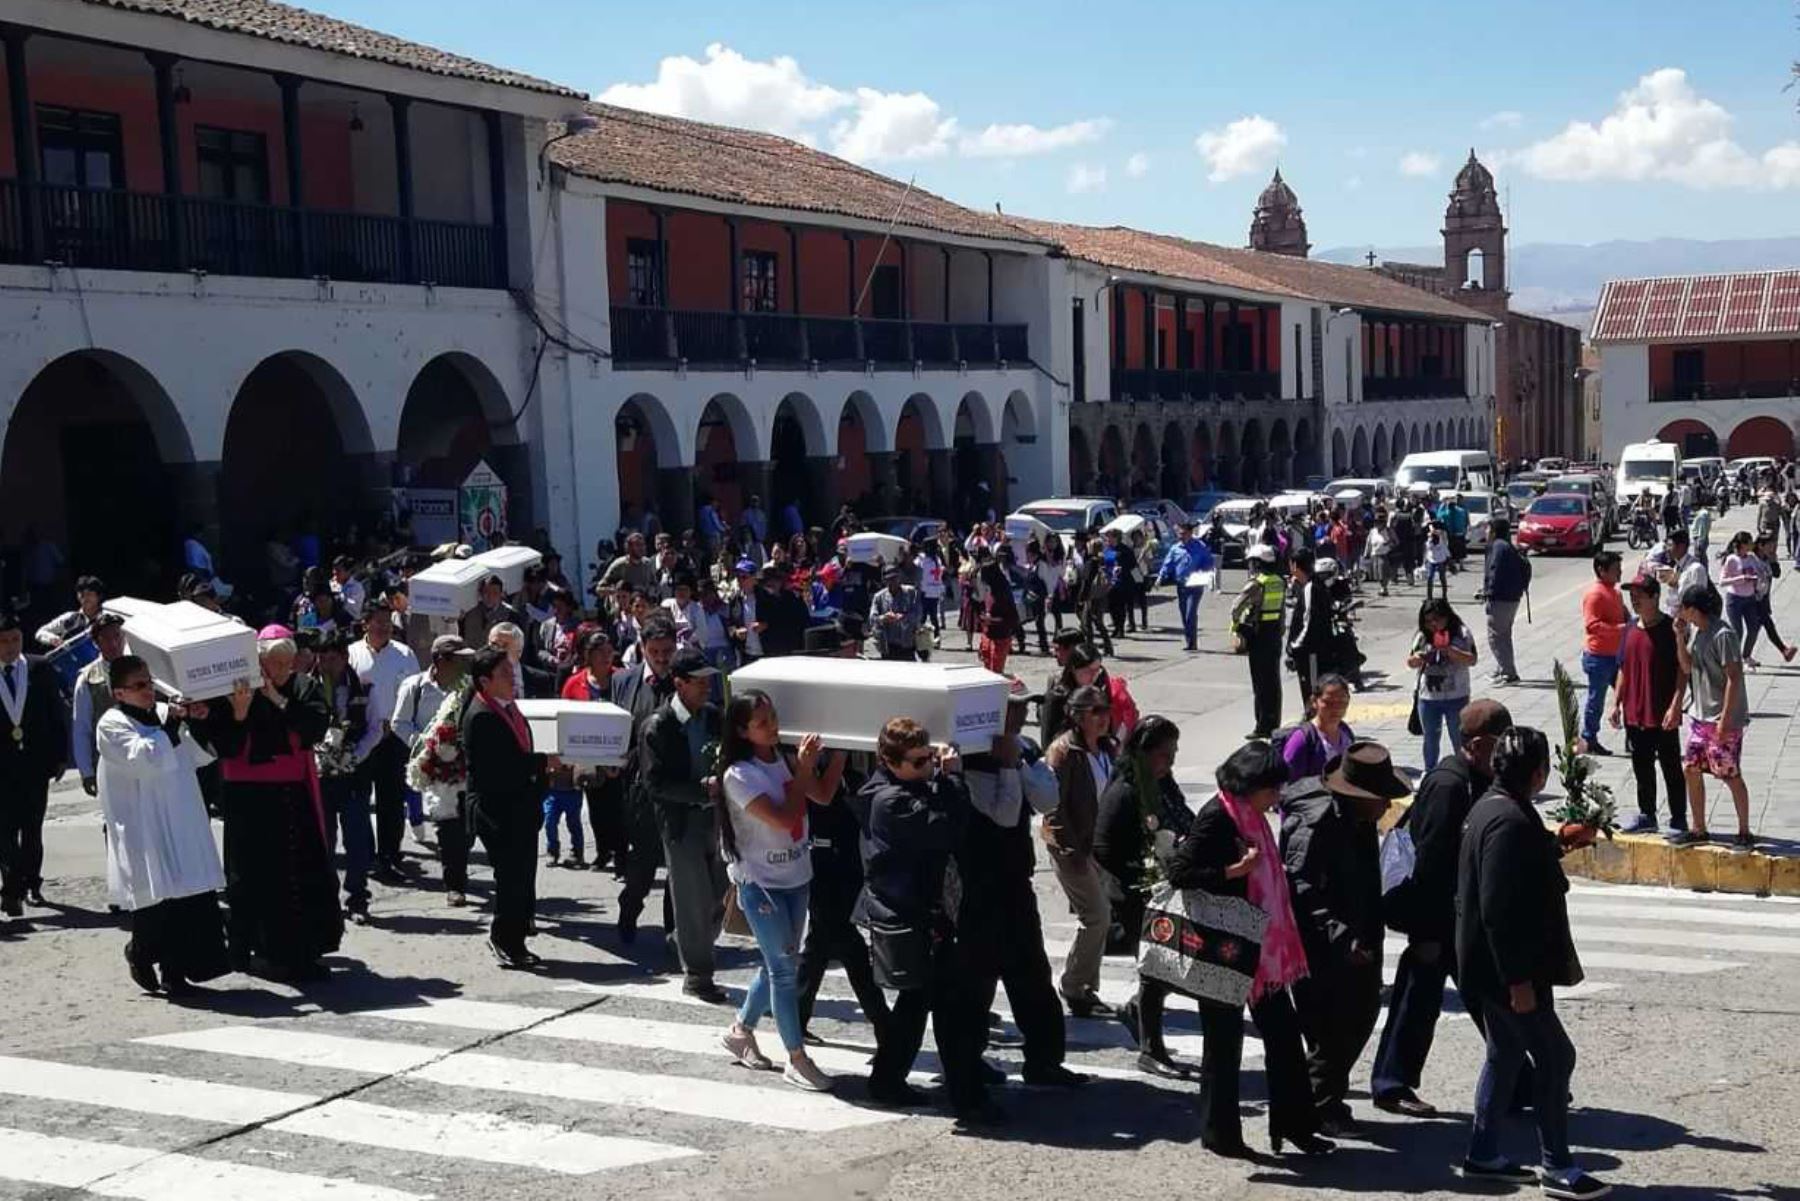 Los restos óseos de 14 personas desaparecidas en la región Ayacucho durante el periodo de violencia (1980-2000) fueron entregados hoy a sus familiares por el Ministerio de Justicia y Derechos Humanos (Minjusdh).